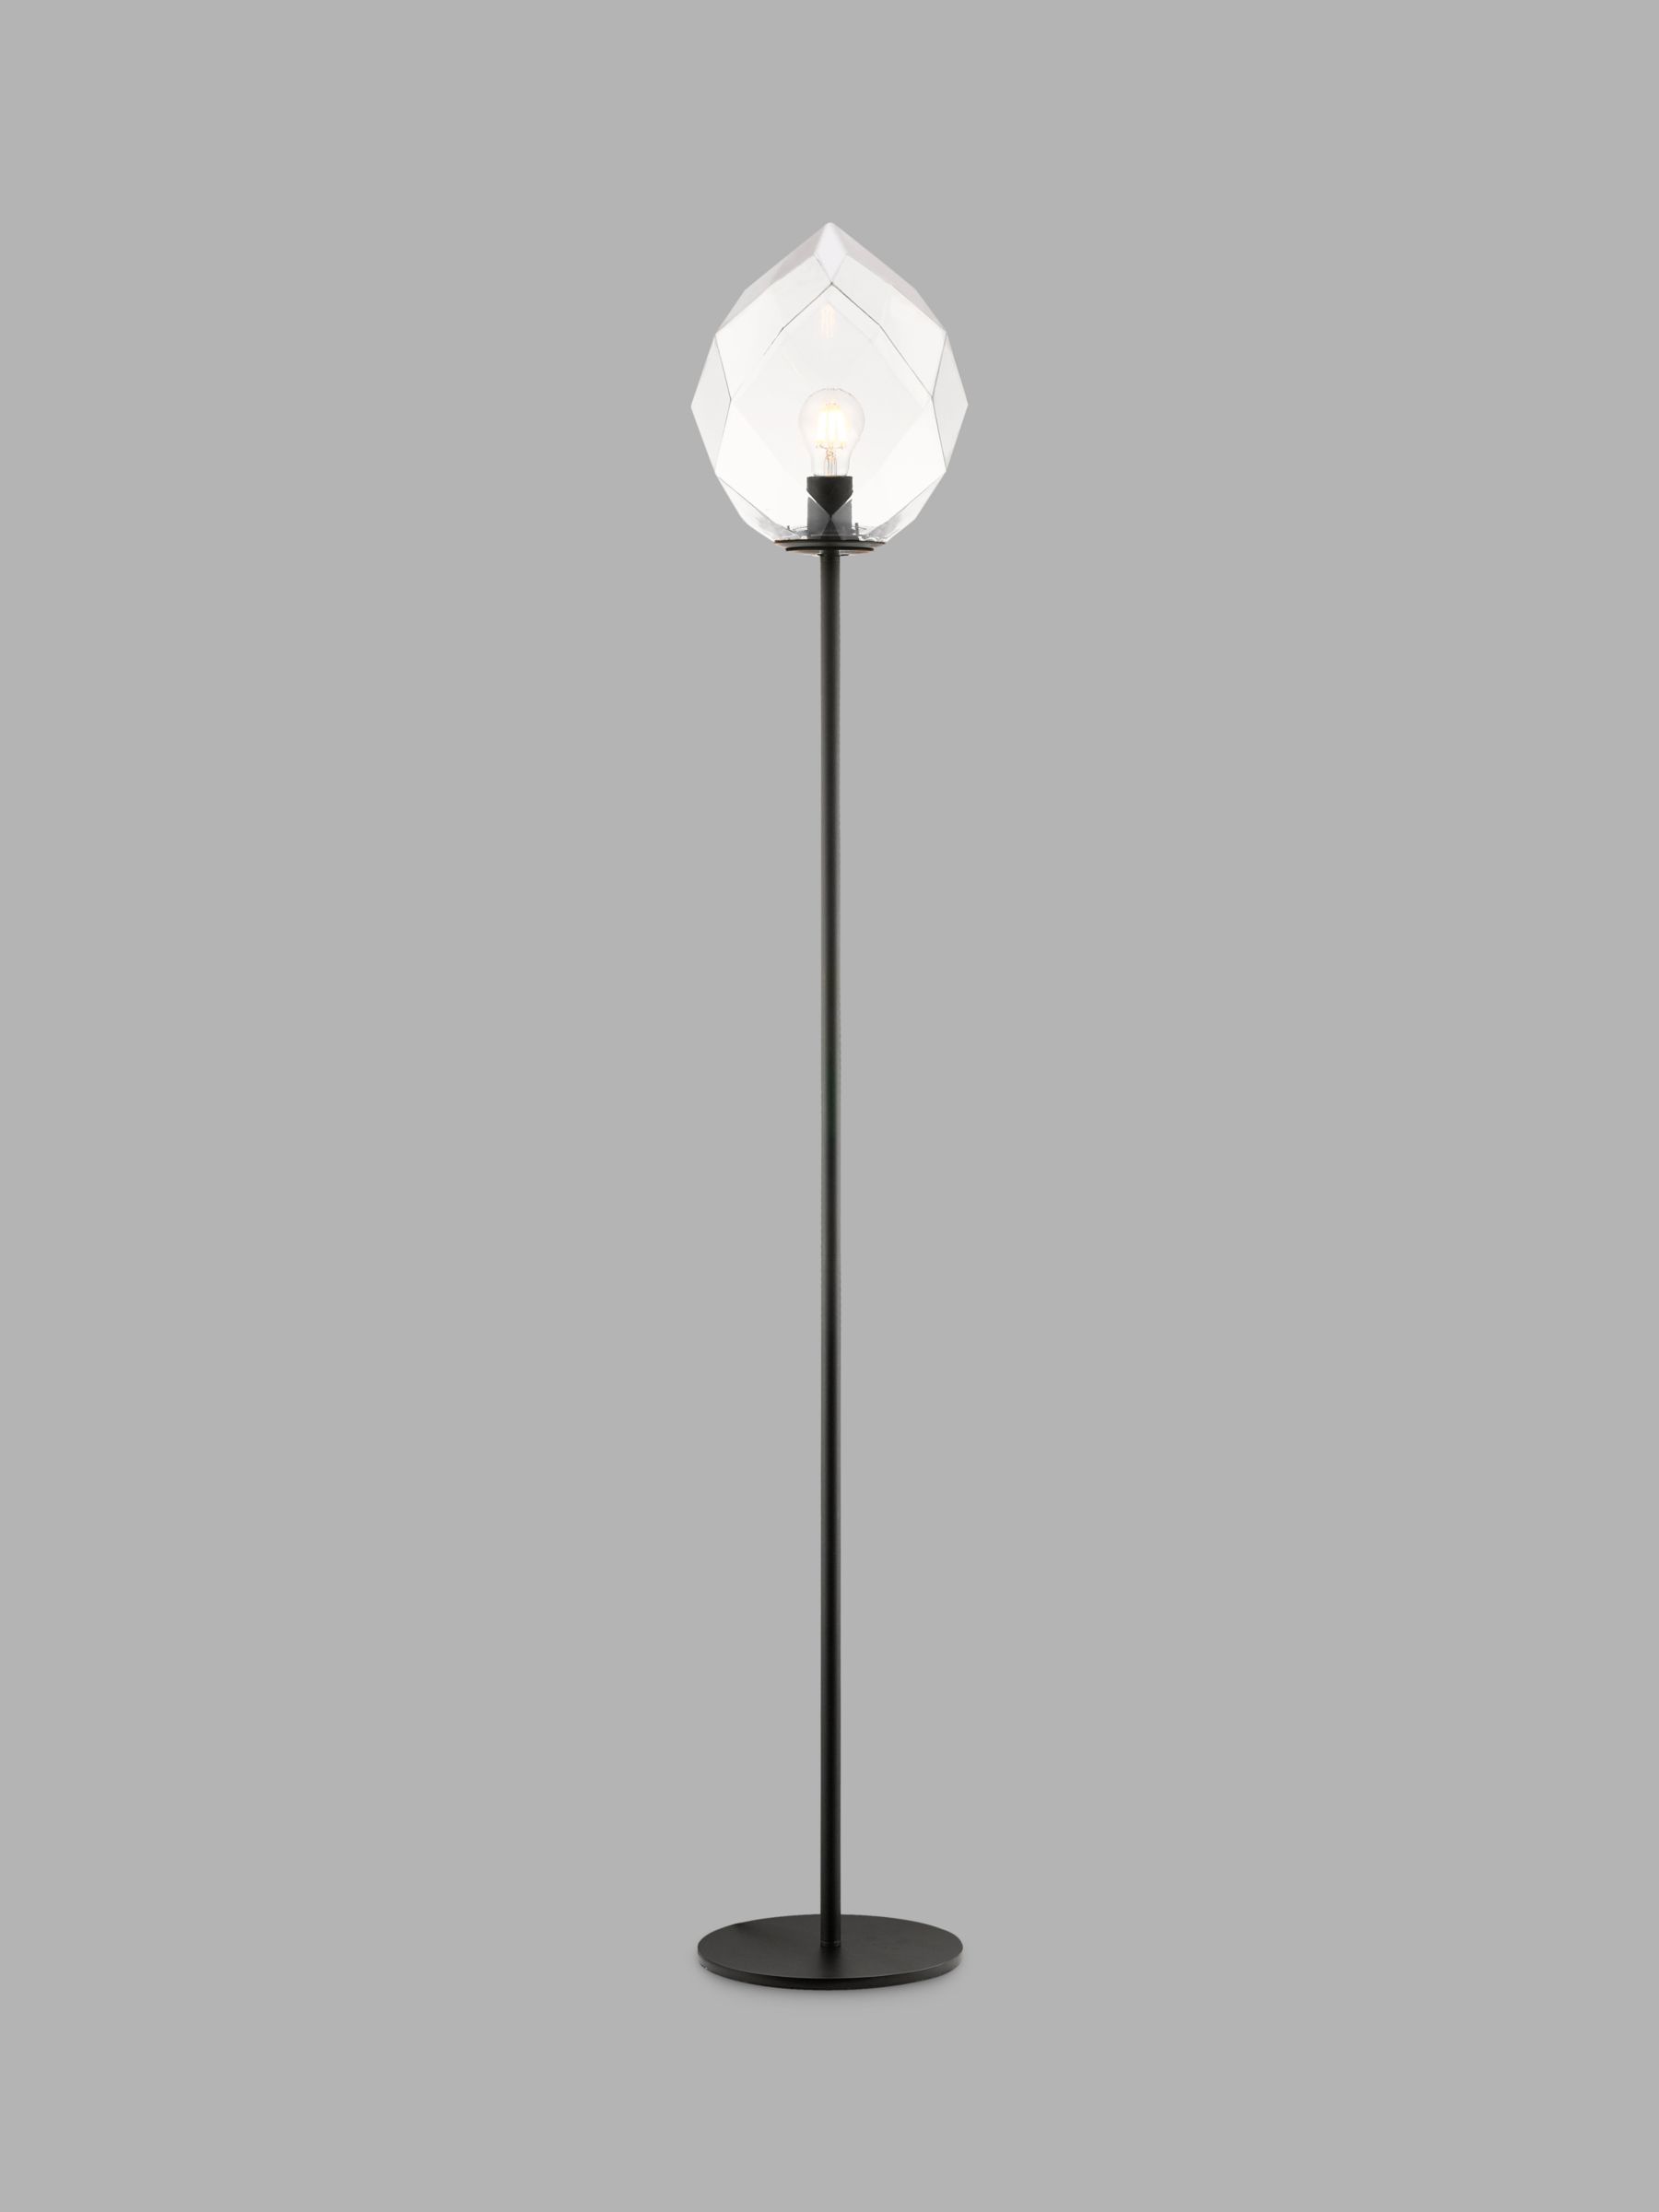 Photo of Impex zoe floor lamp